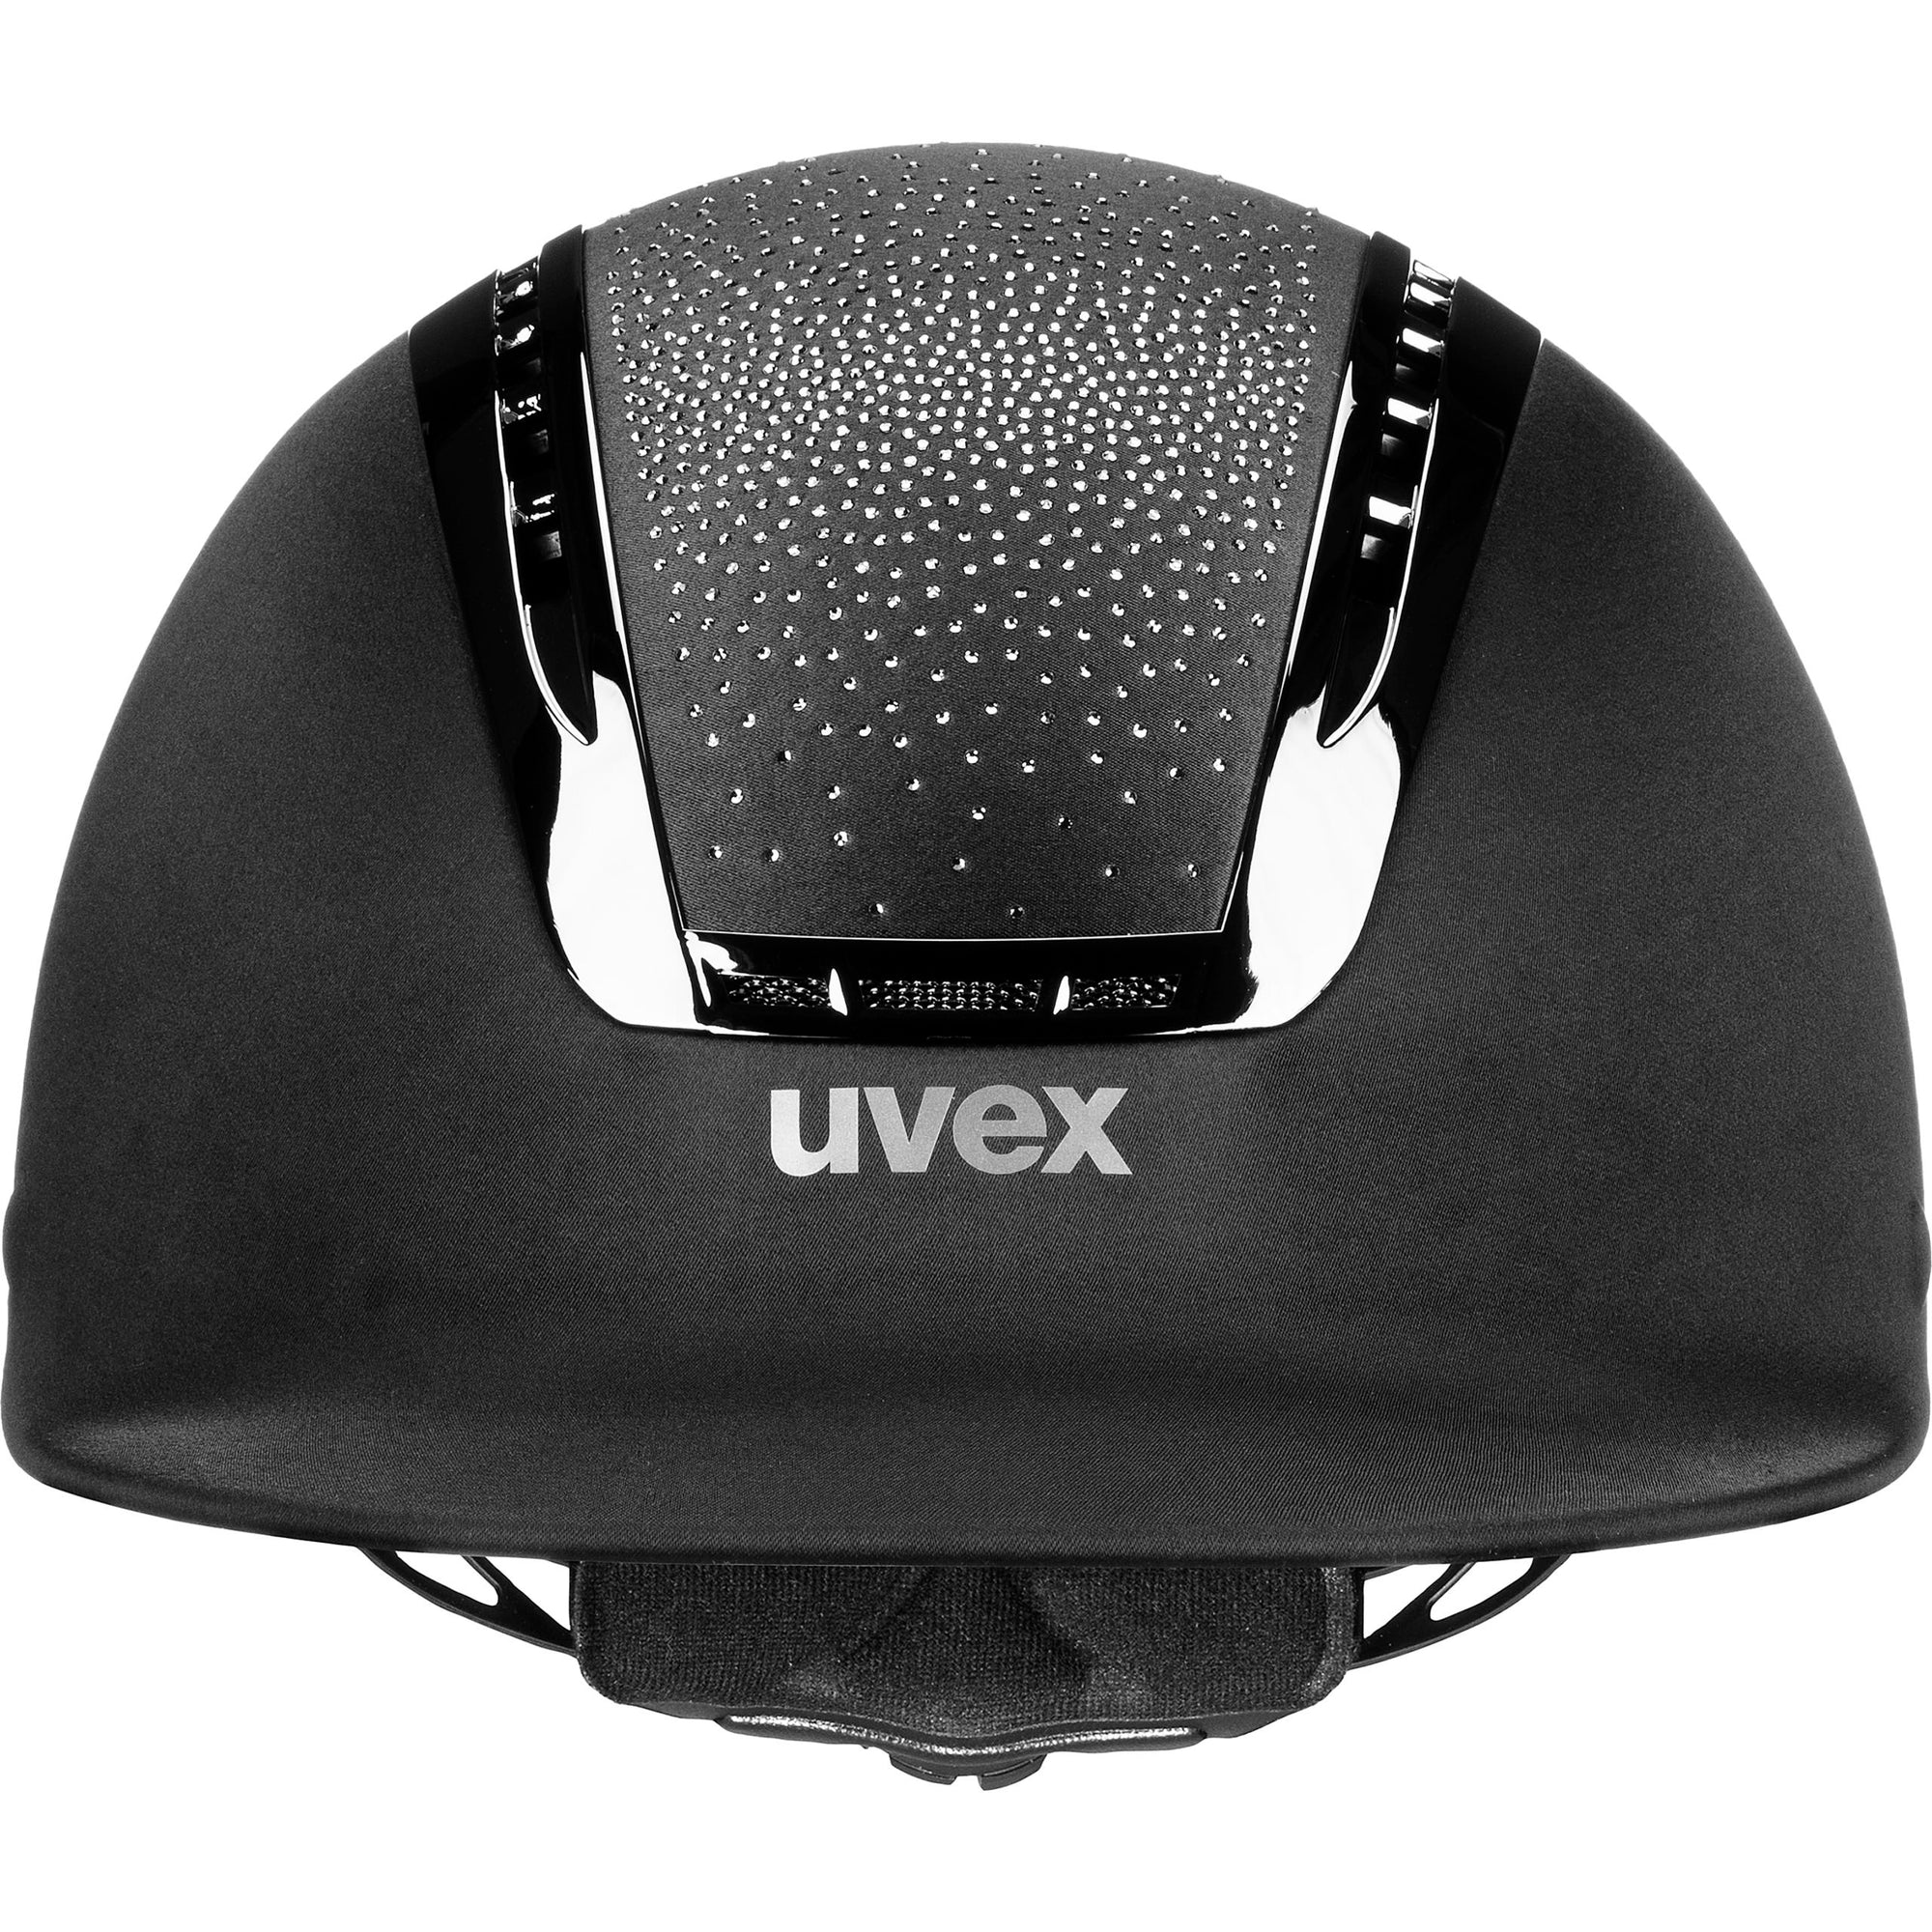 UVEX SUXXEED JEWEL in schwarz/schwarz, Frontansicht